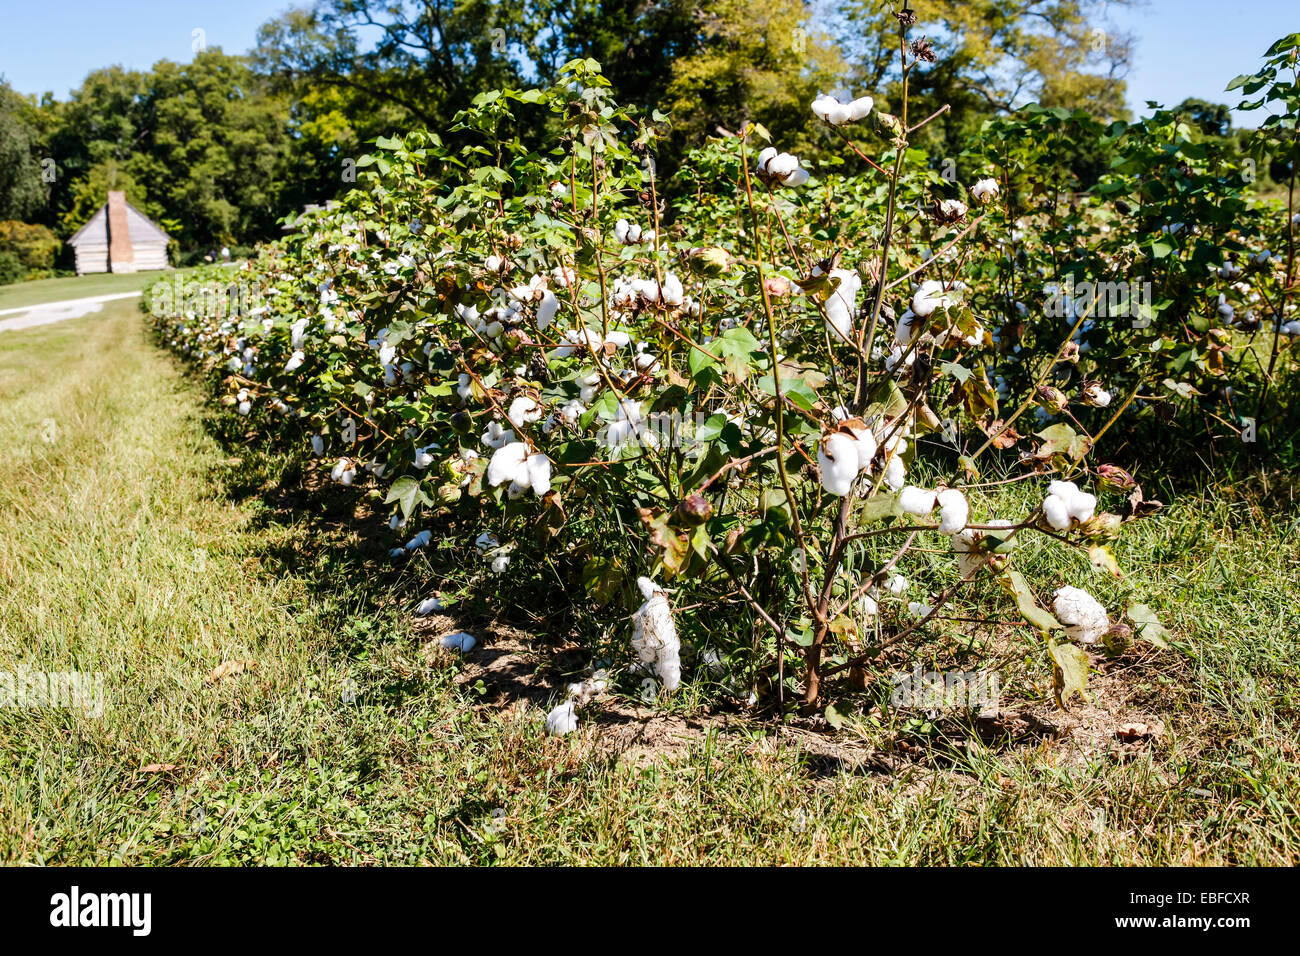 Il cash-crop del sud degli Stati Uniti d'America - il cotone. Foto Stock